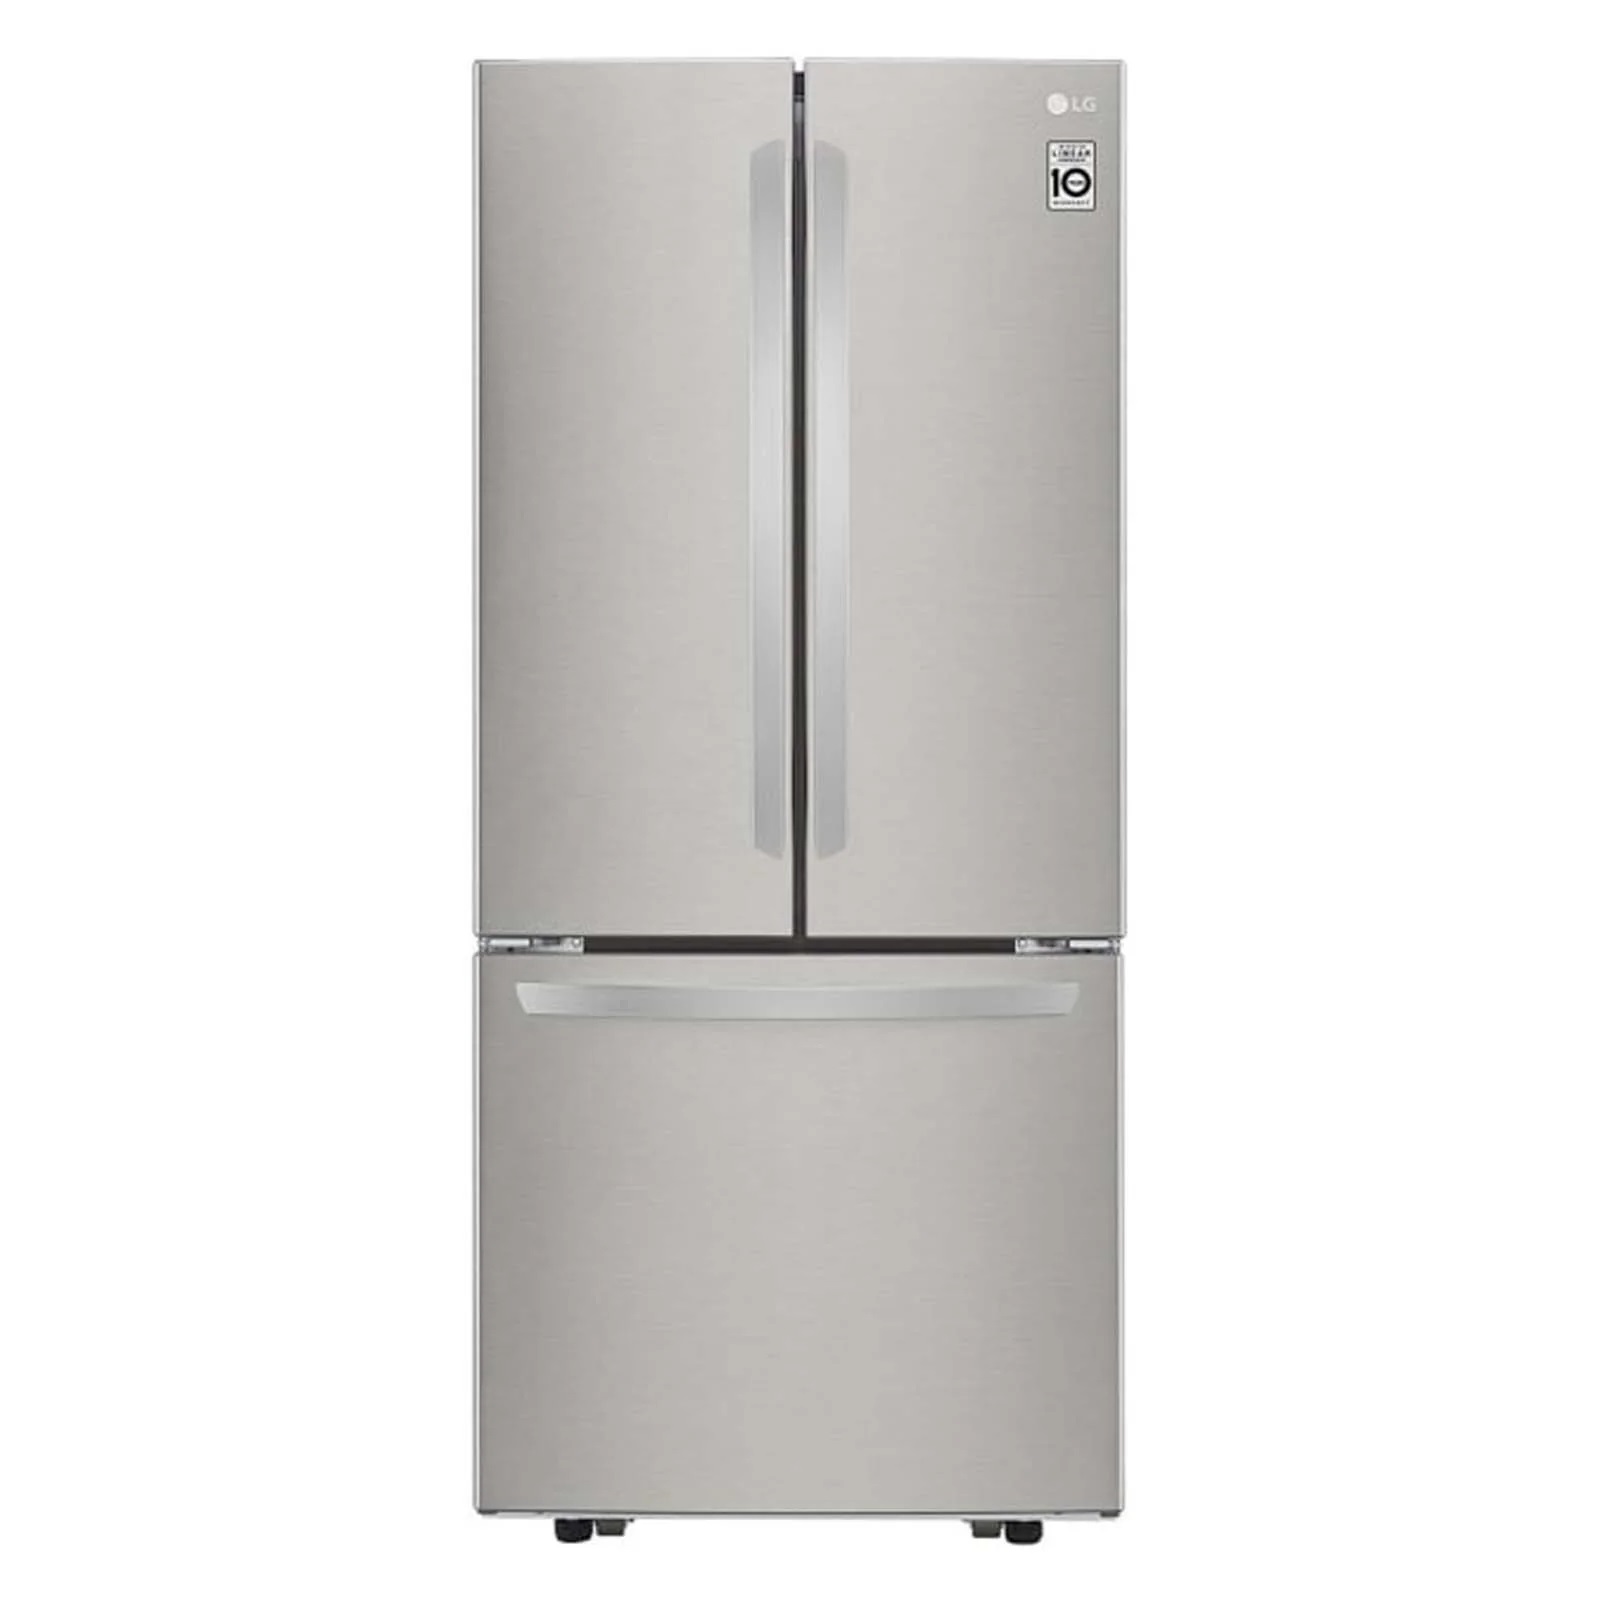 refrigerador-lg-22-pies-cubicos-french-door-gris-gf22bgsk